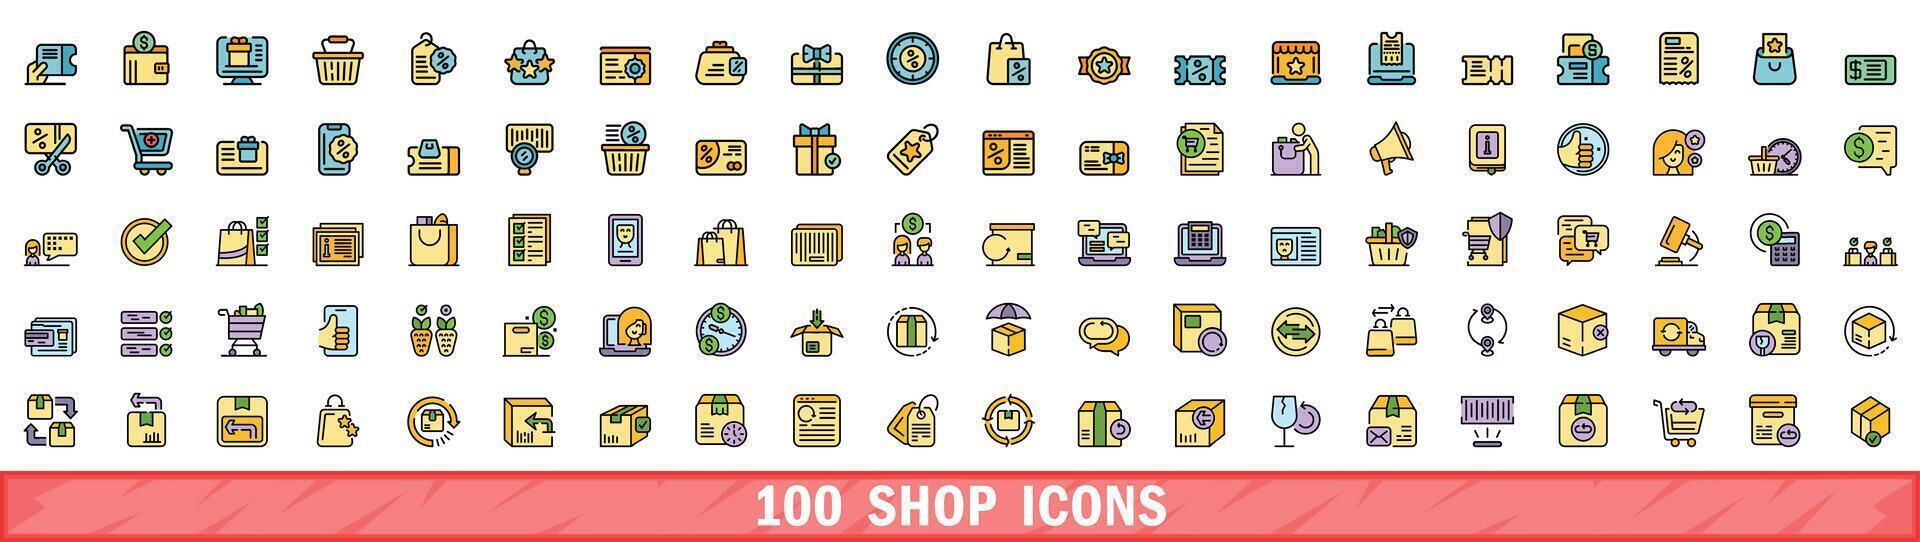 100 shop icons set, color line style vector